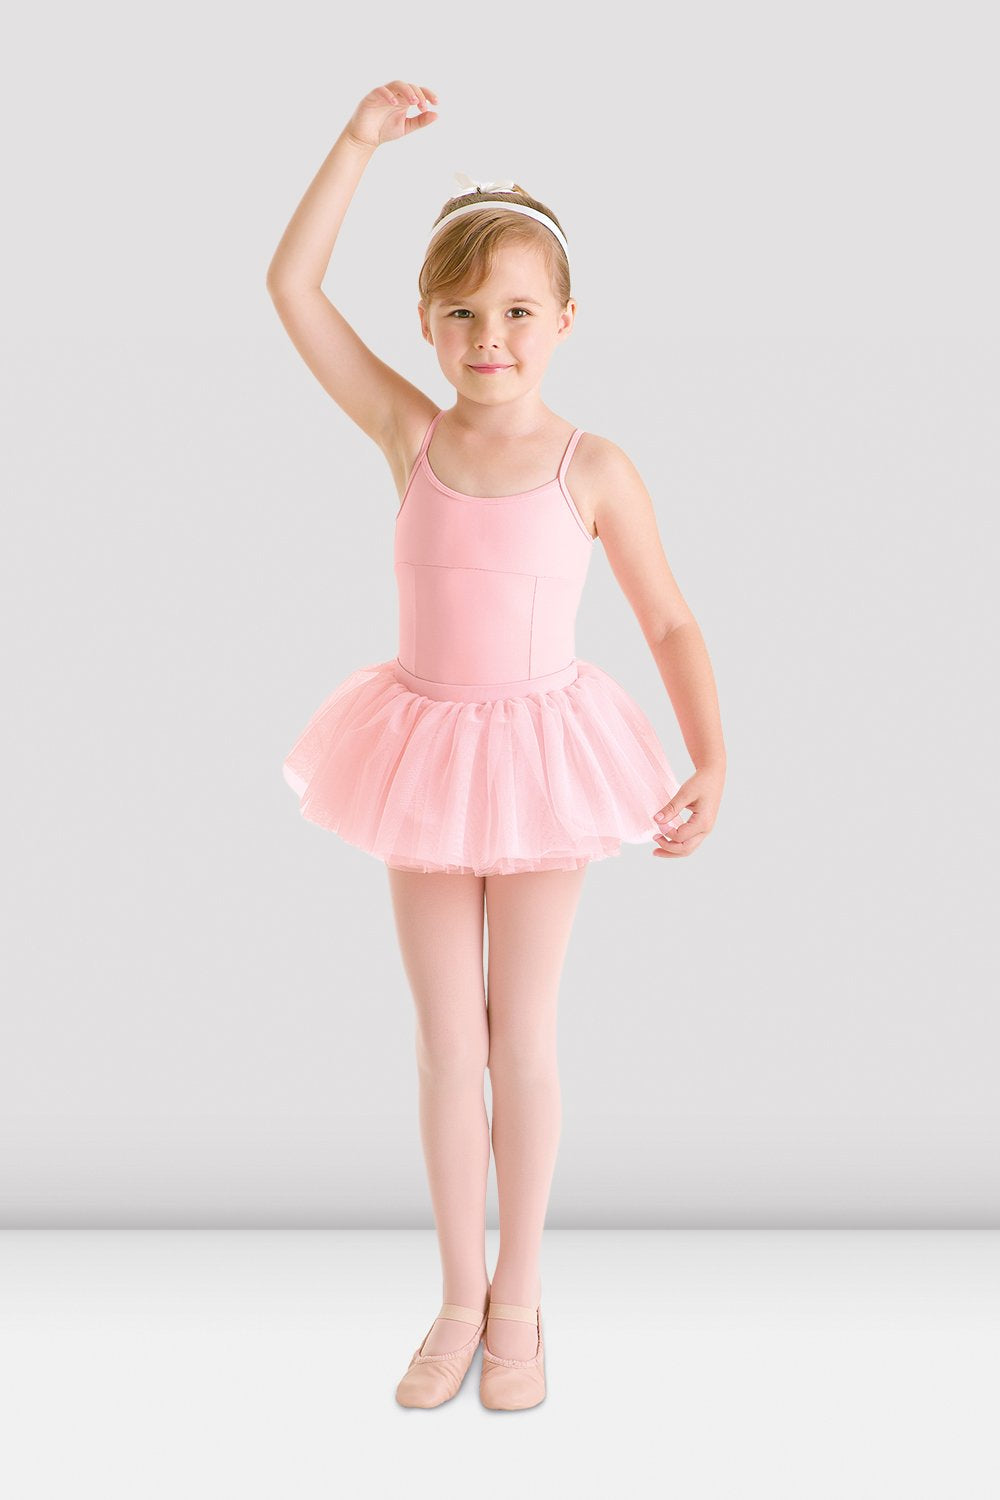 ballet pink dress   Ballerina costume Classical ballet tutu Dance  outfits